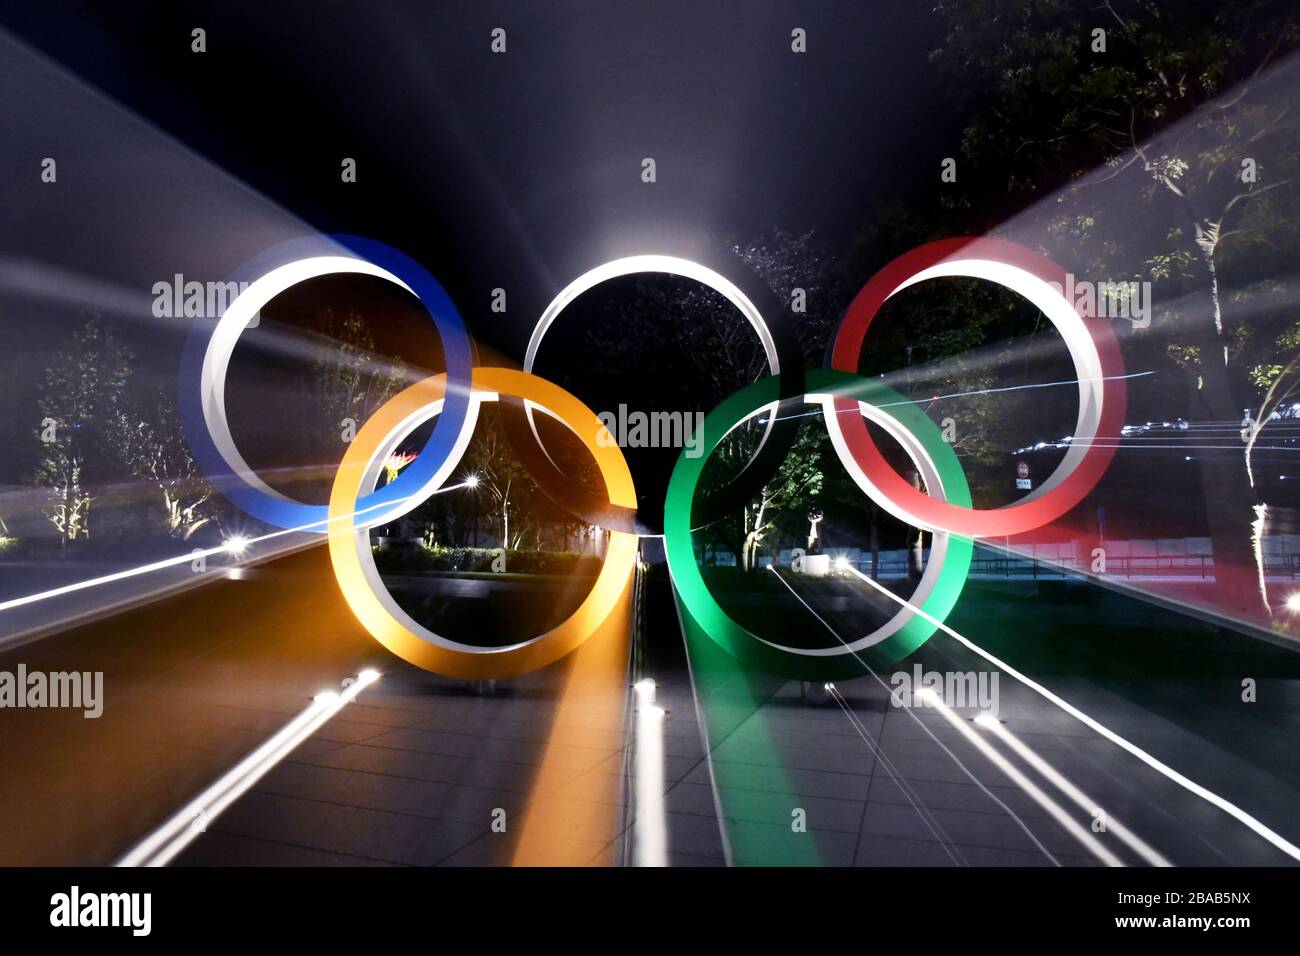 24 de marzo de 2020, Tokio, Japón: Los Anillos Olímpicos frente al Estadio  Nacional de Tokio Japón se pueden ver por la noche el martes 24 de marzo de  2020. Hoy, según